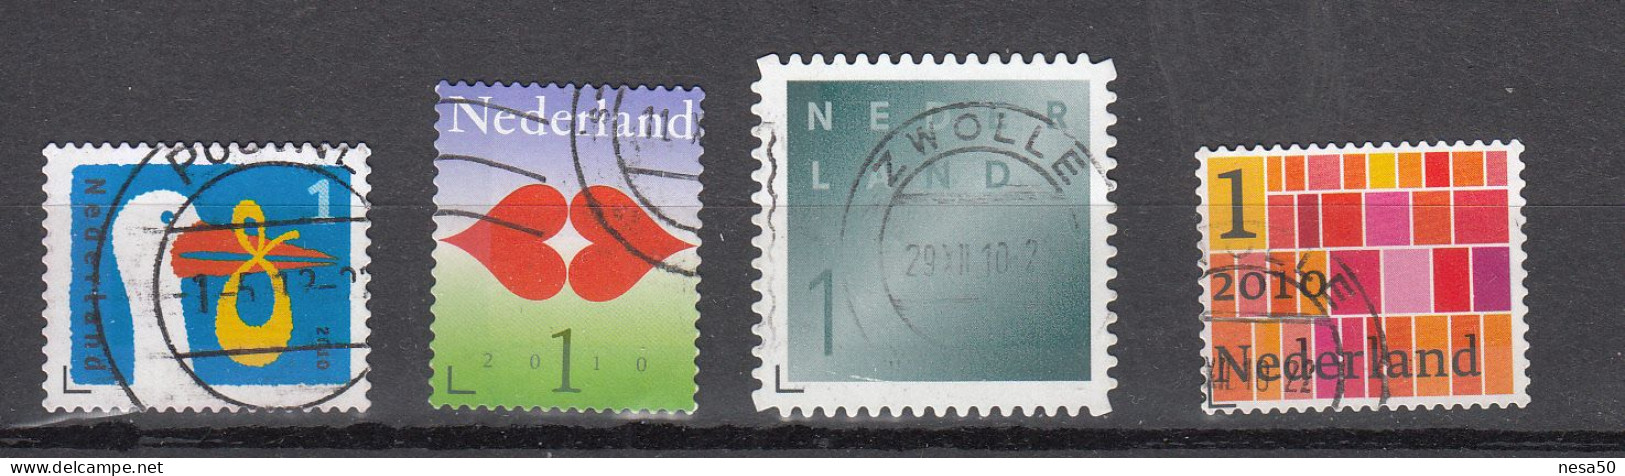 Nederland 2010 Nvph Nr 2744 - 2747, Mi Nr 2756 - 2758, Geboortezegel, Liefde, Rouw + Zakenpostzegel - Gebruikt